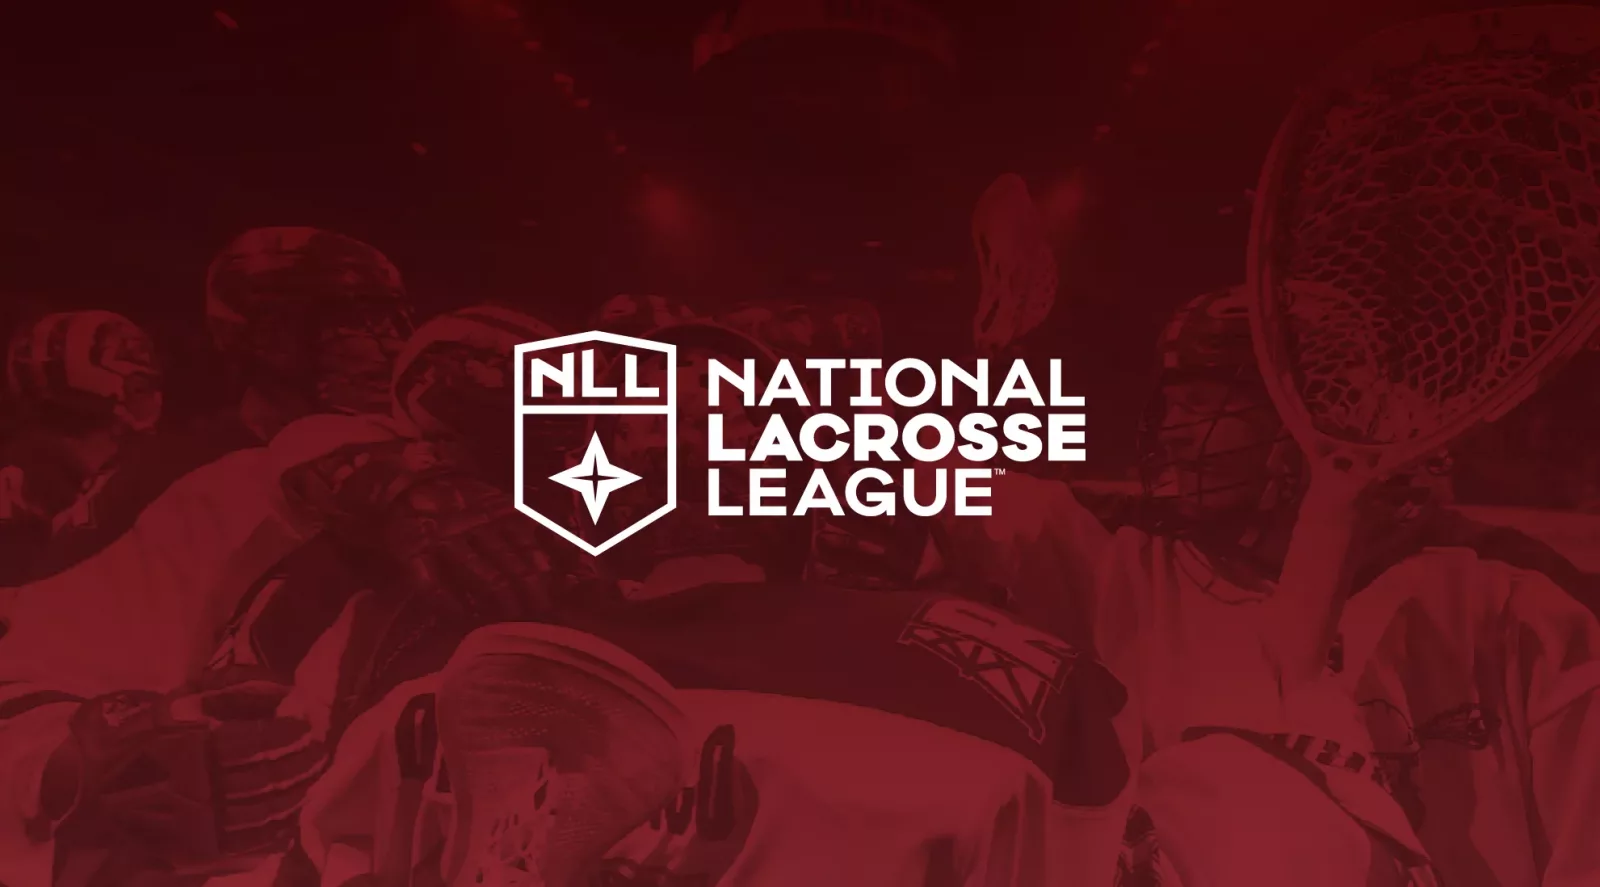 national lacrosse league